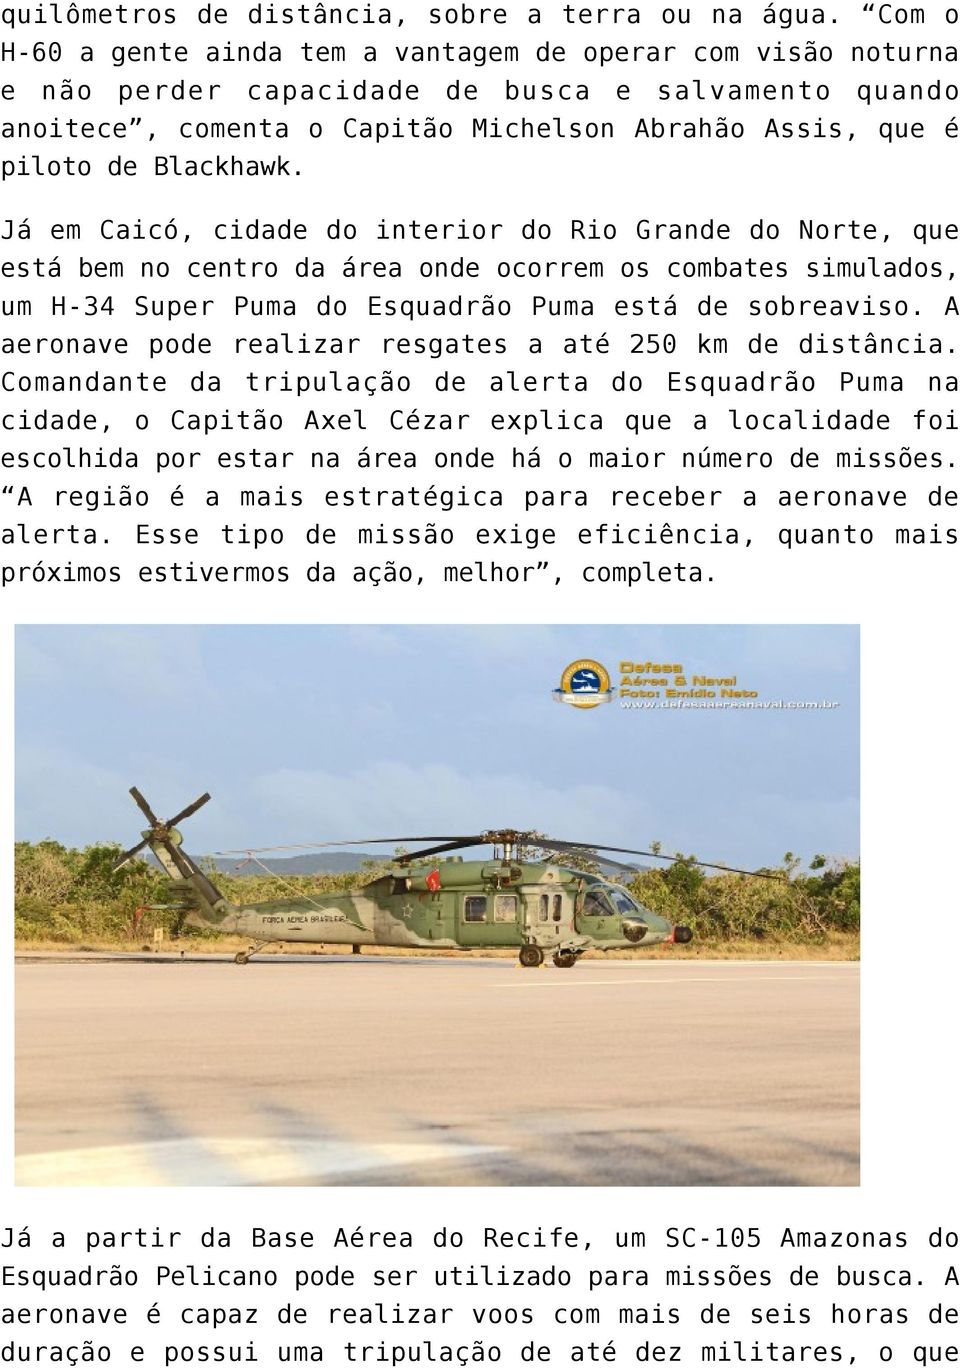 Já em Caicó, cidade do interior do Rio Grande do Norte, que está bem no centro da área onde ocorrem os combates simulados, um H-34 Super Puma do Esquadrão Puma está de sobreaviso.